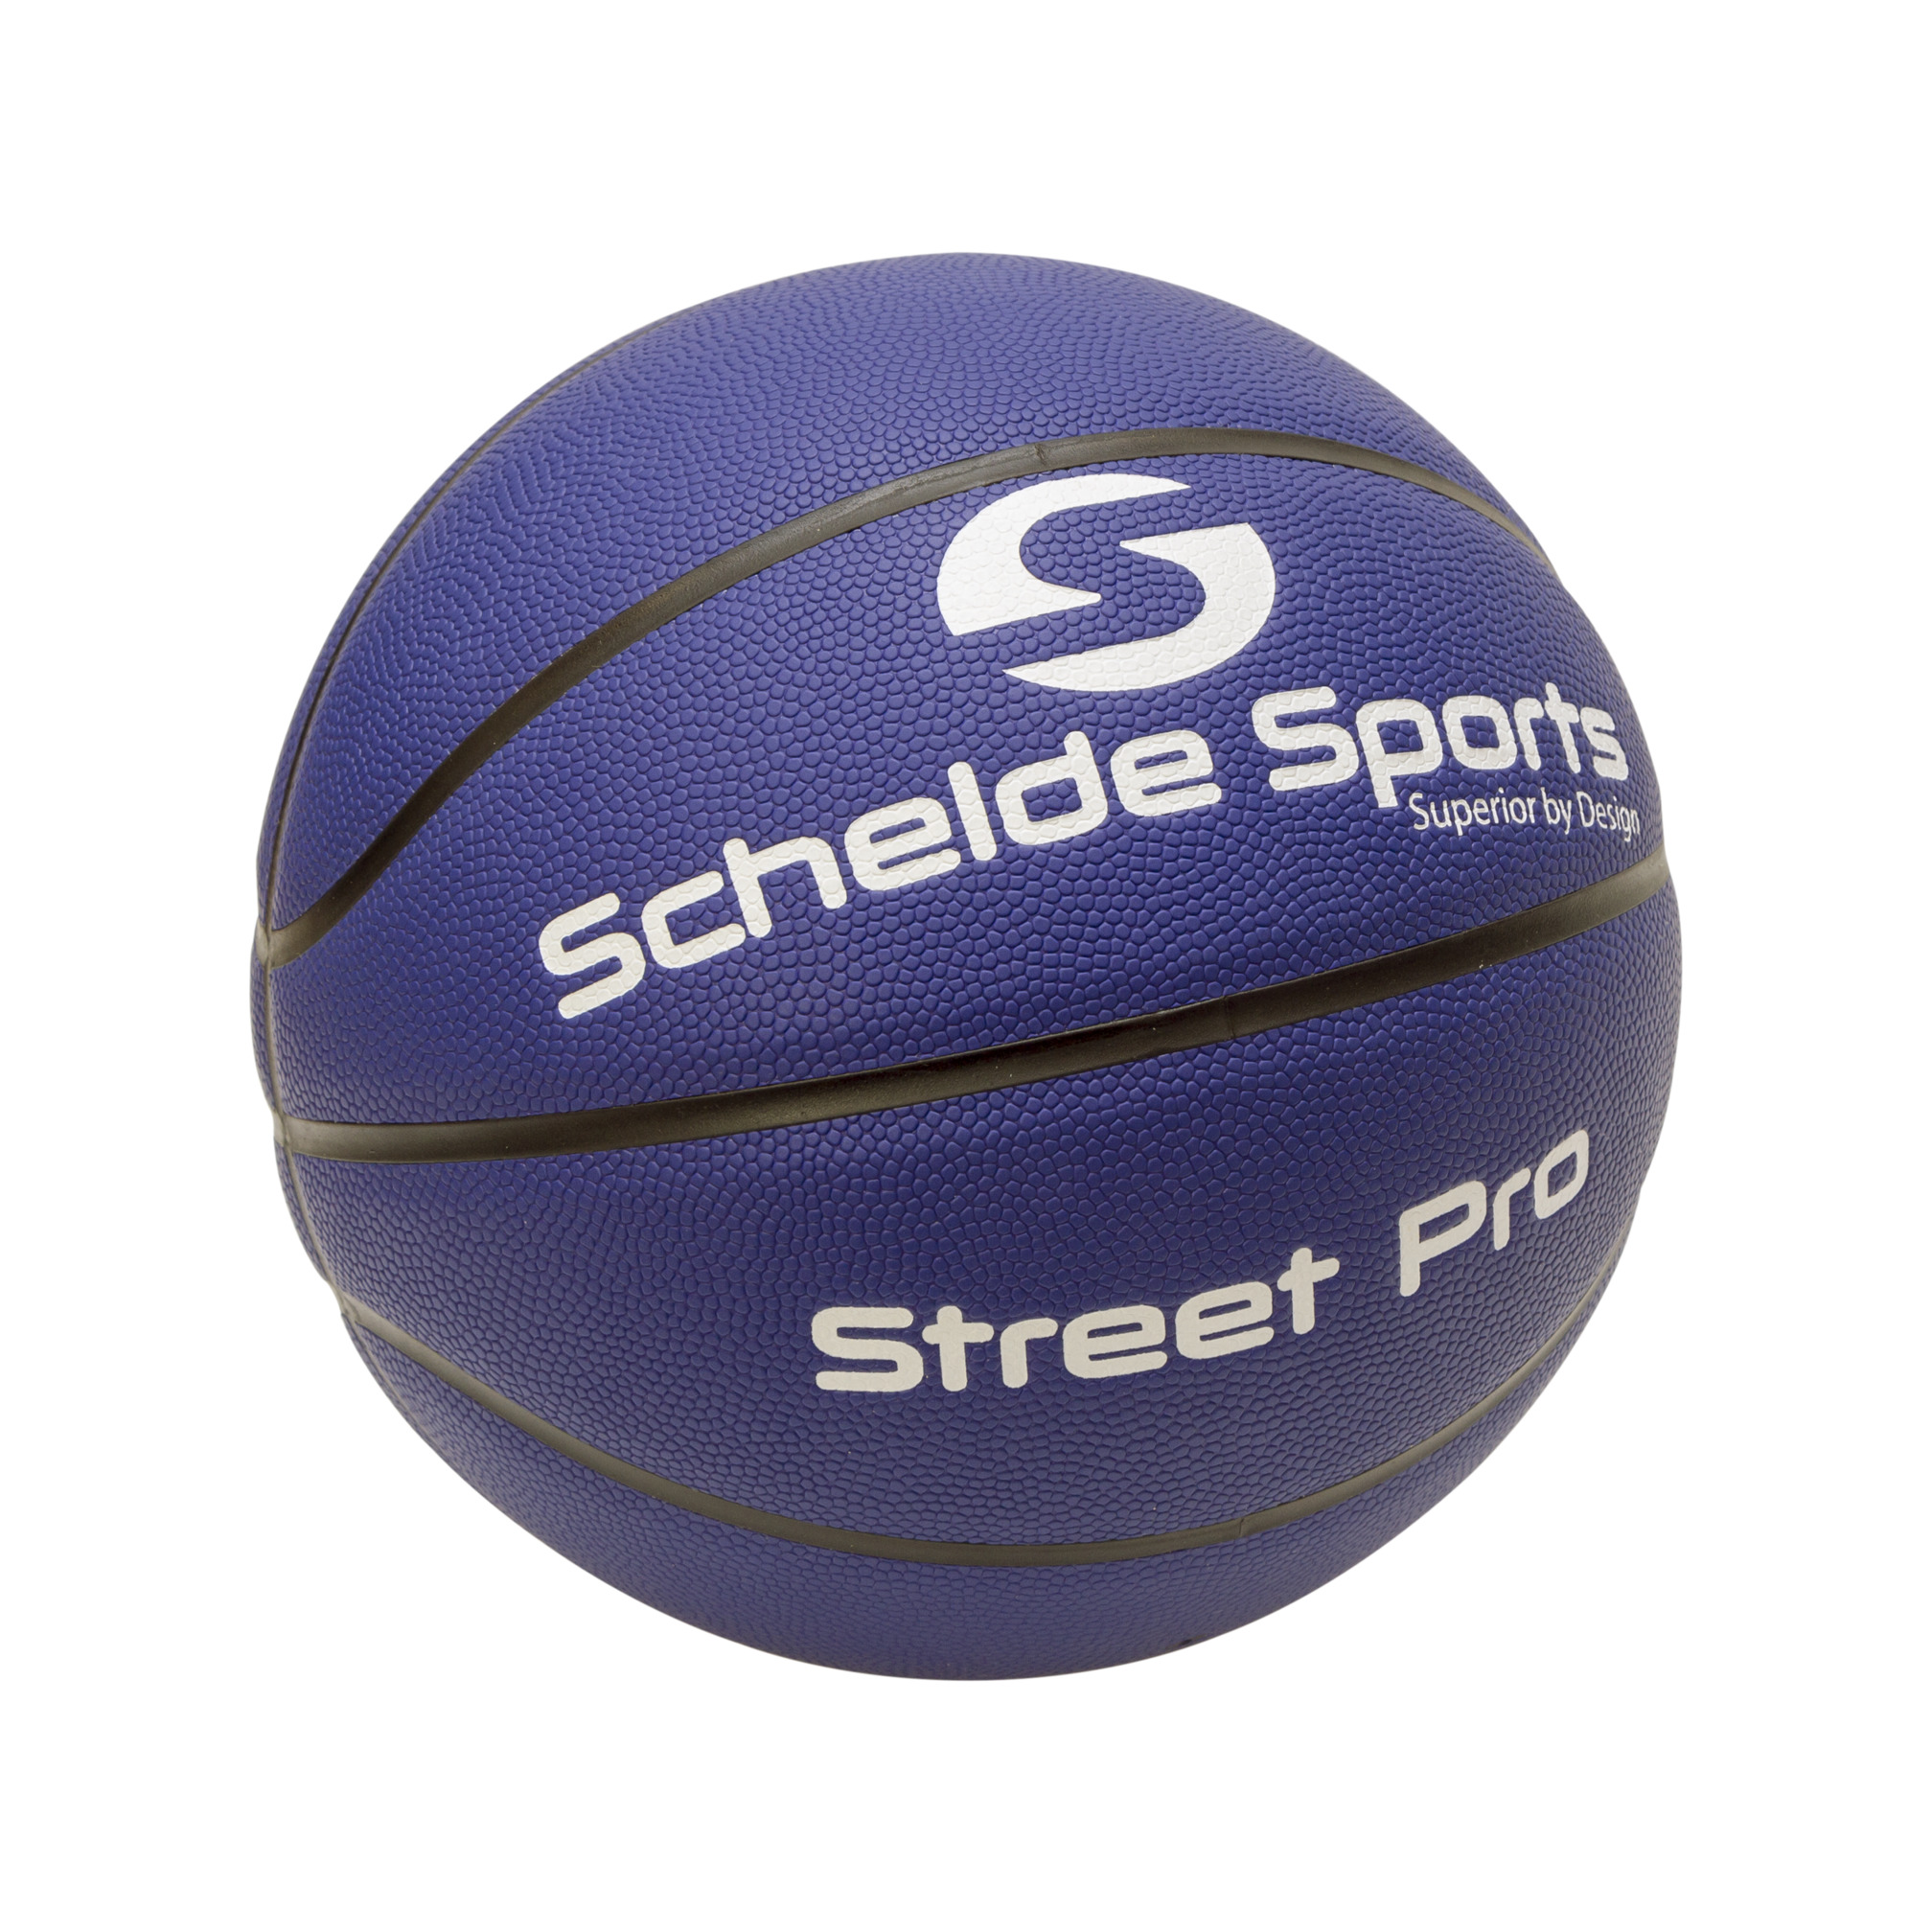 Schelde Sports Basketball 3x3 Street Pro, Size 6